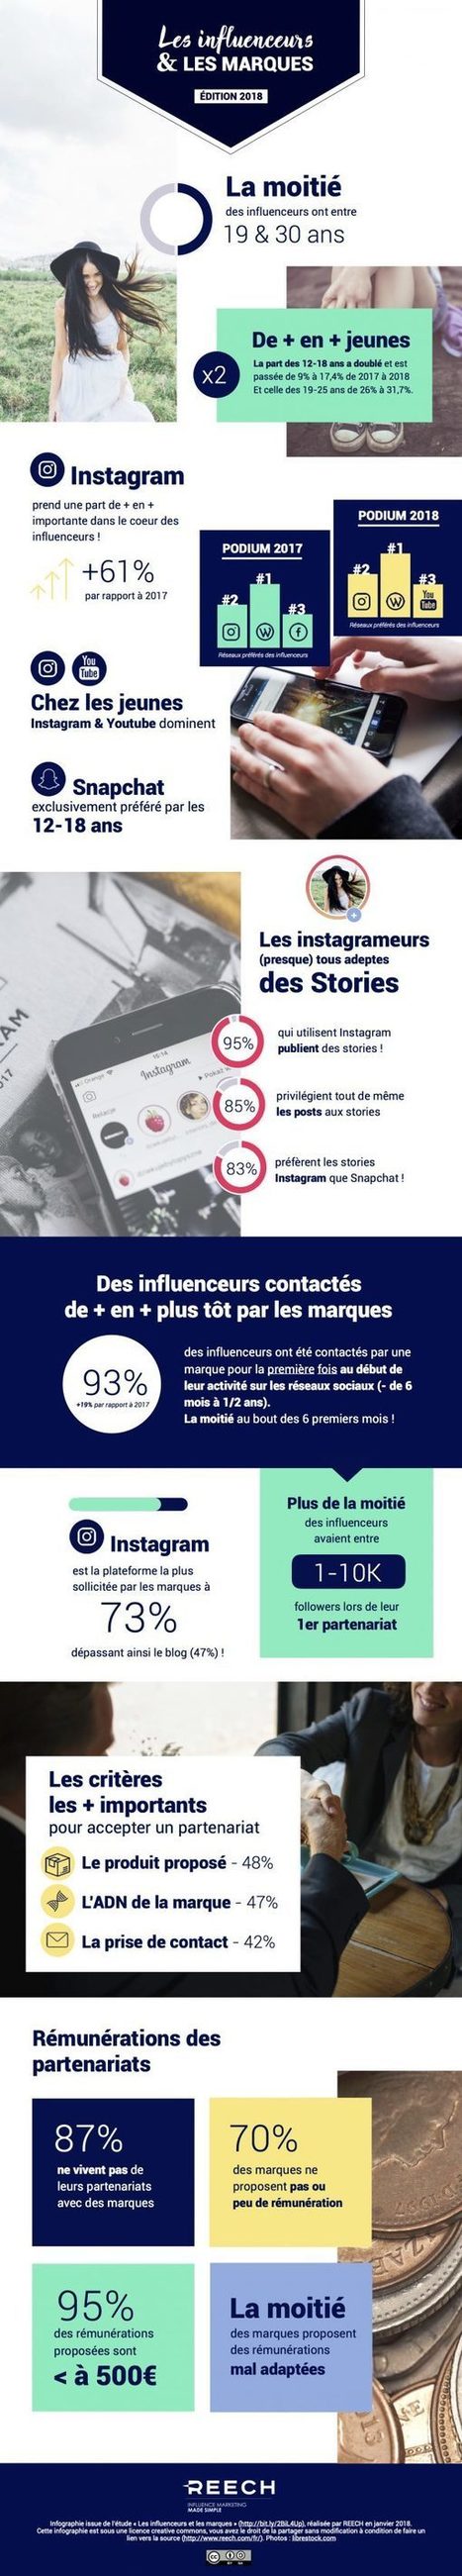 Étude : les influenceurs et les marques en 2018 | e-Social + AI DL IoT | Scoop.it